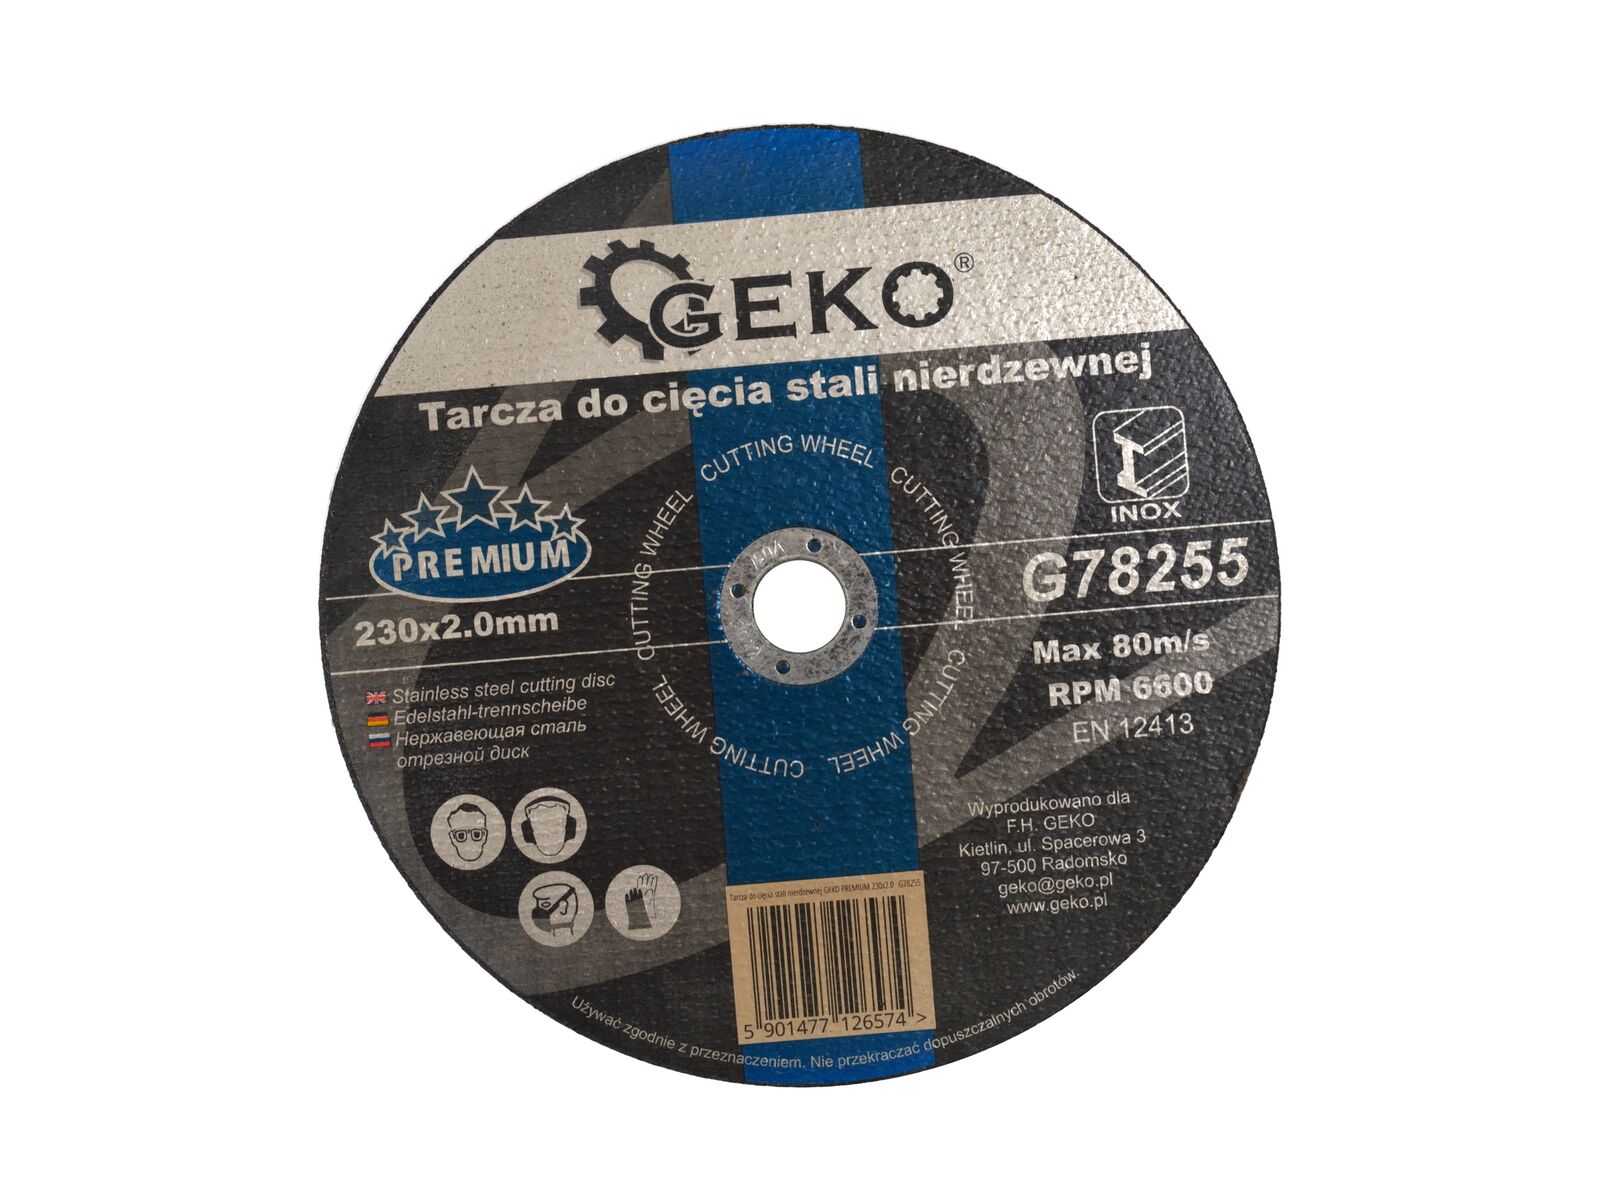 Disc pentru taierea otelului, GEKO PREMIUM 230mm, G78255